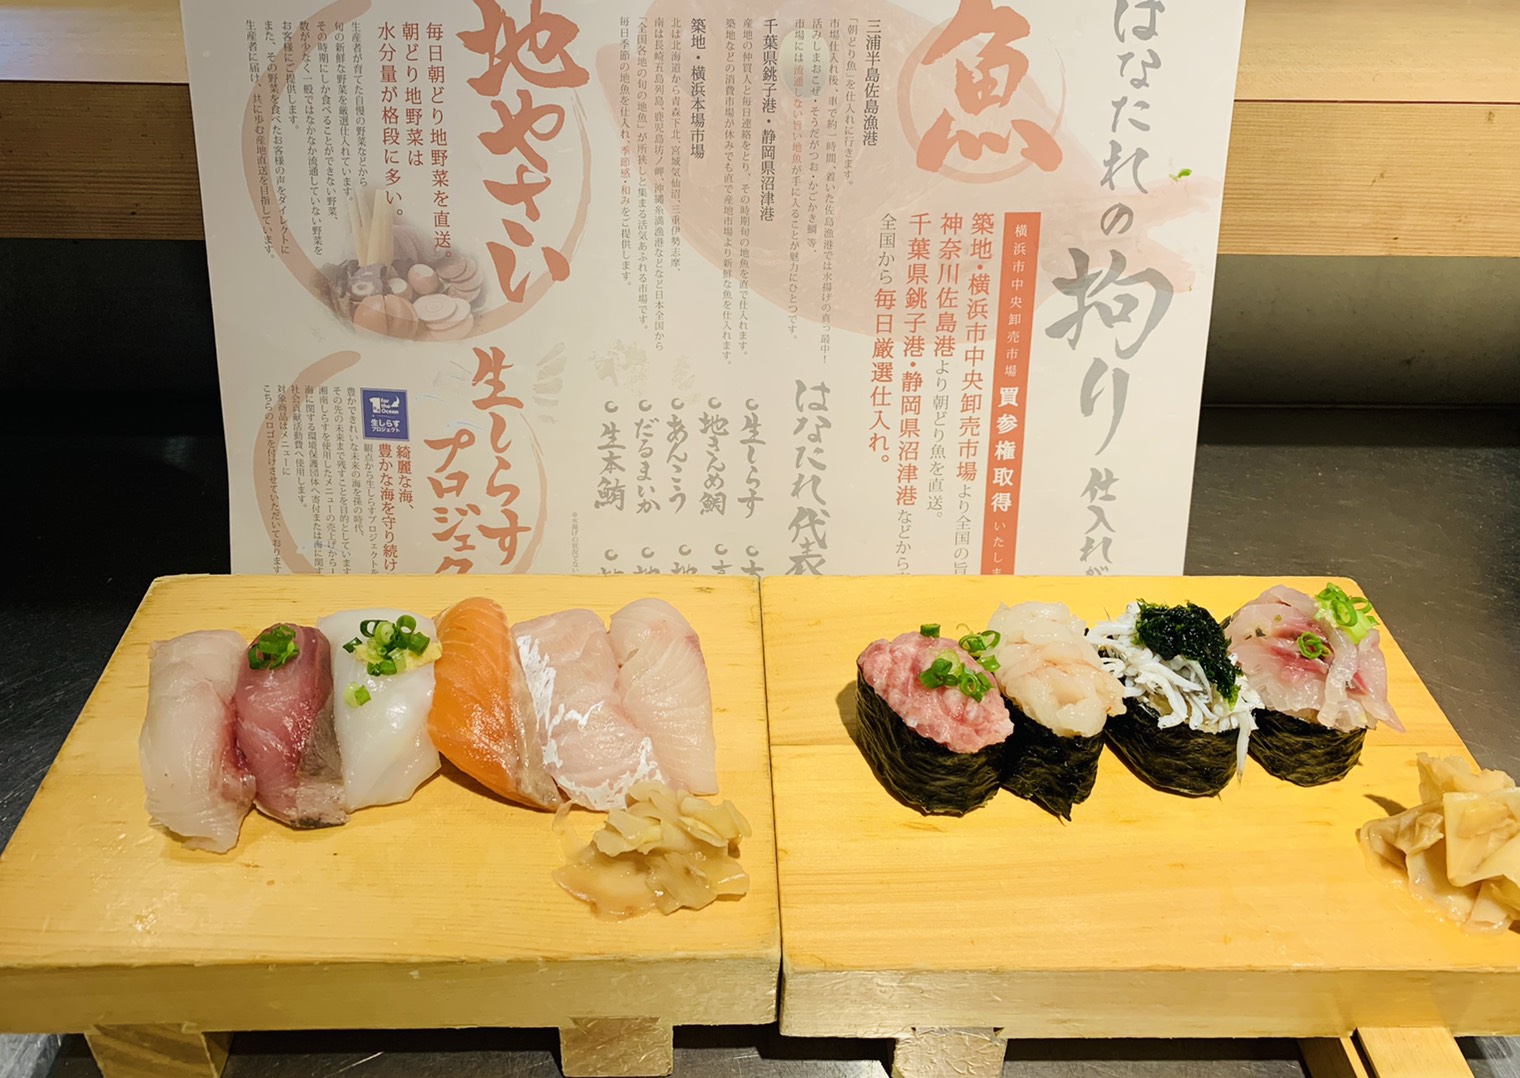 期間延長 横浜中央卸売市場直送 寿司食べ放題70分 を1 980円で開催 株式会社firstdropのプレスリリース